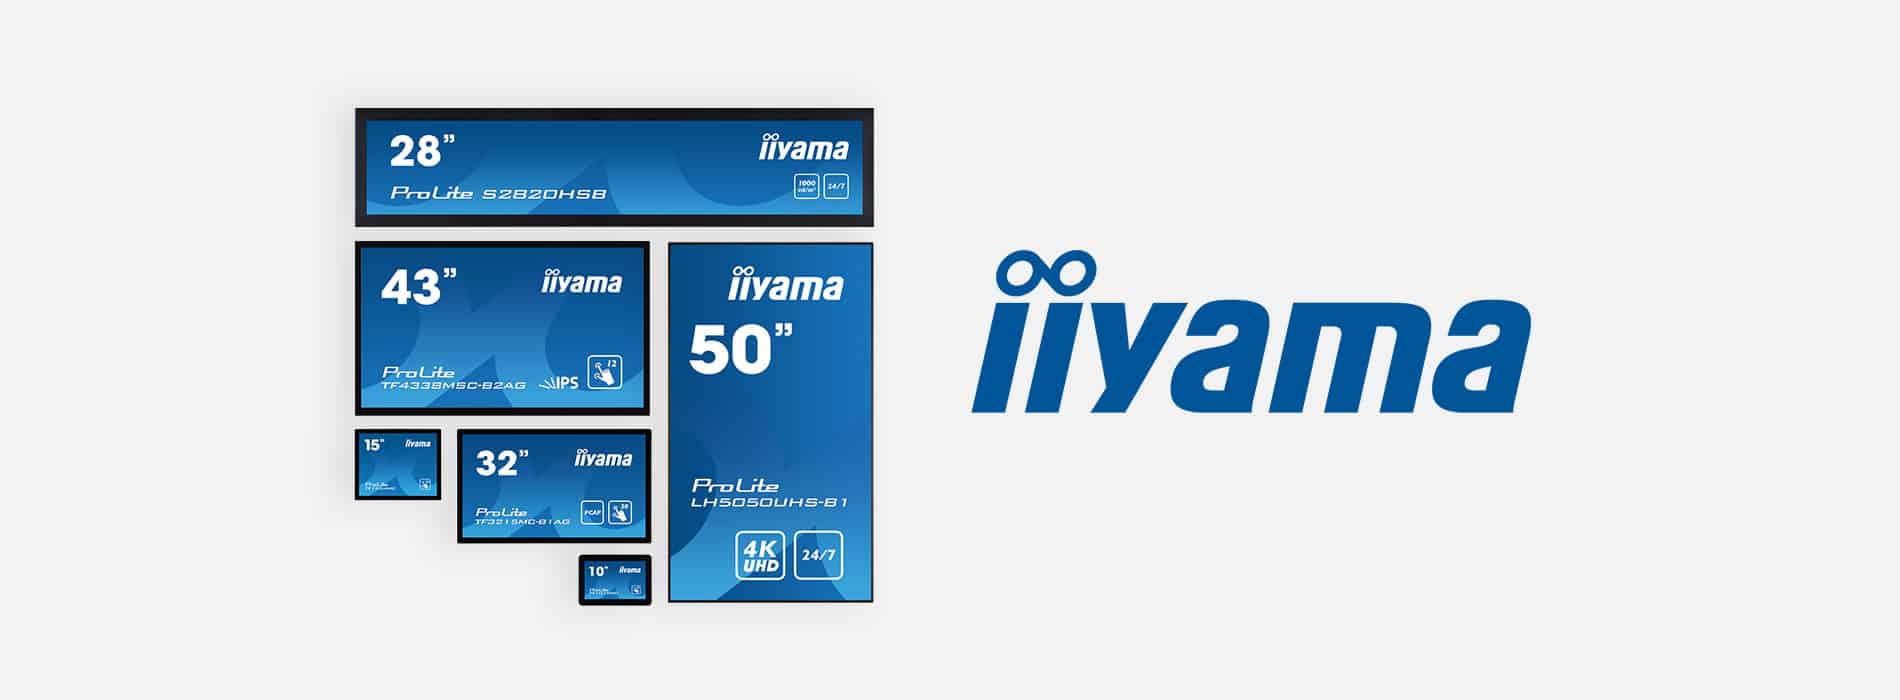 Iiyama Digital Signage Sortiment Online Shop Media Solutions